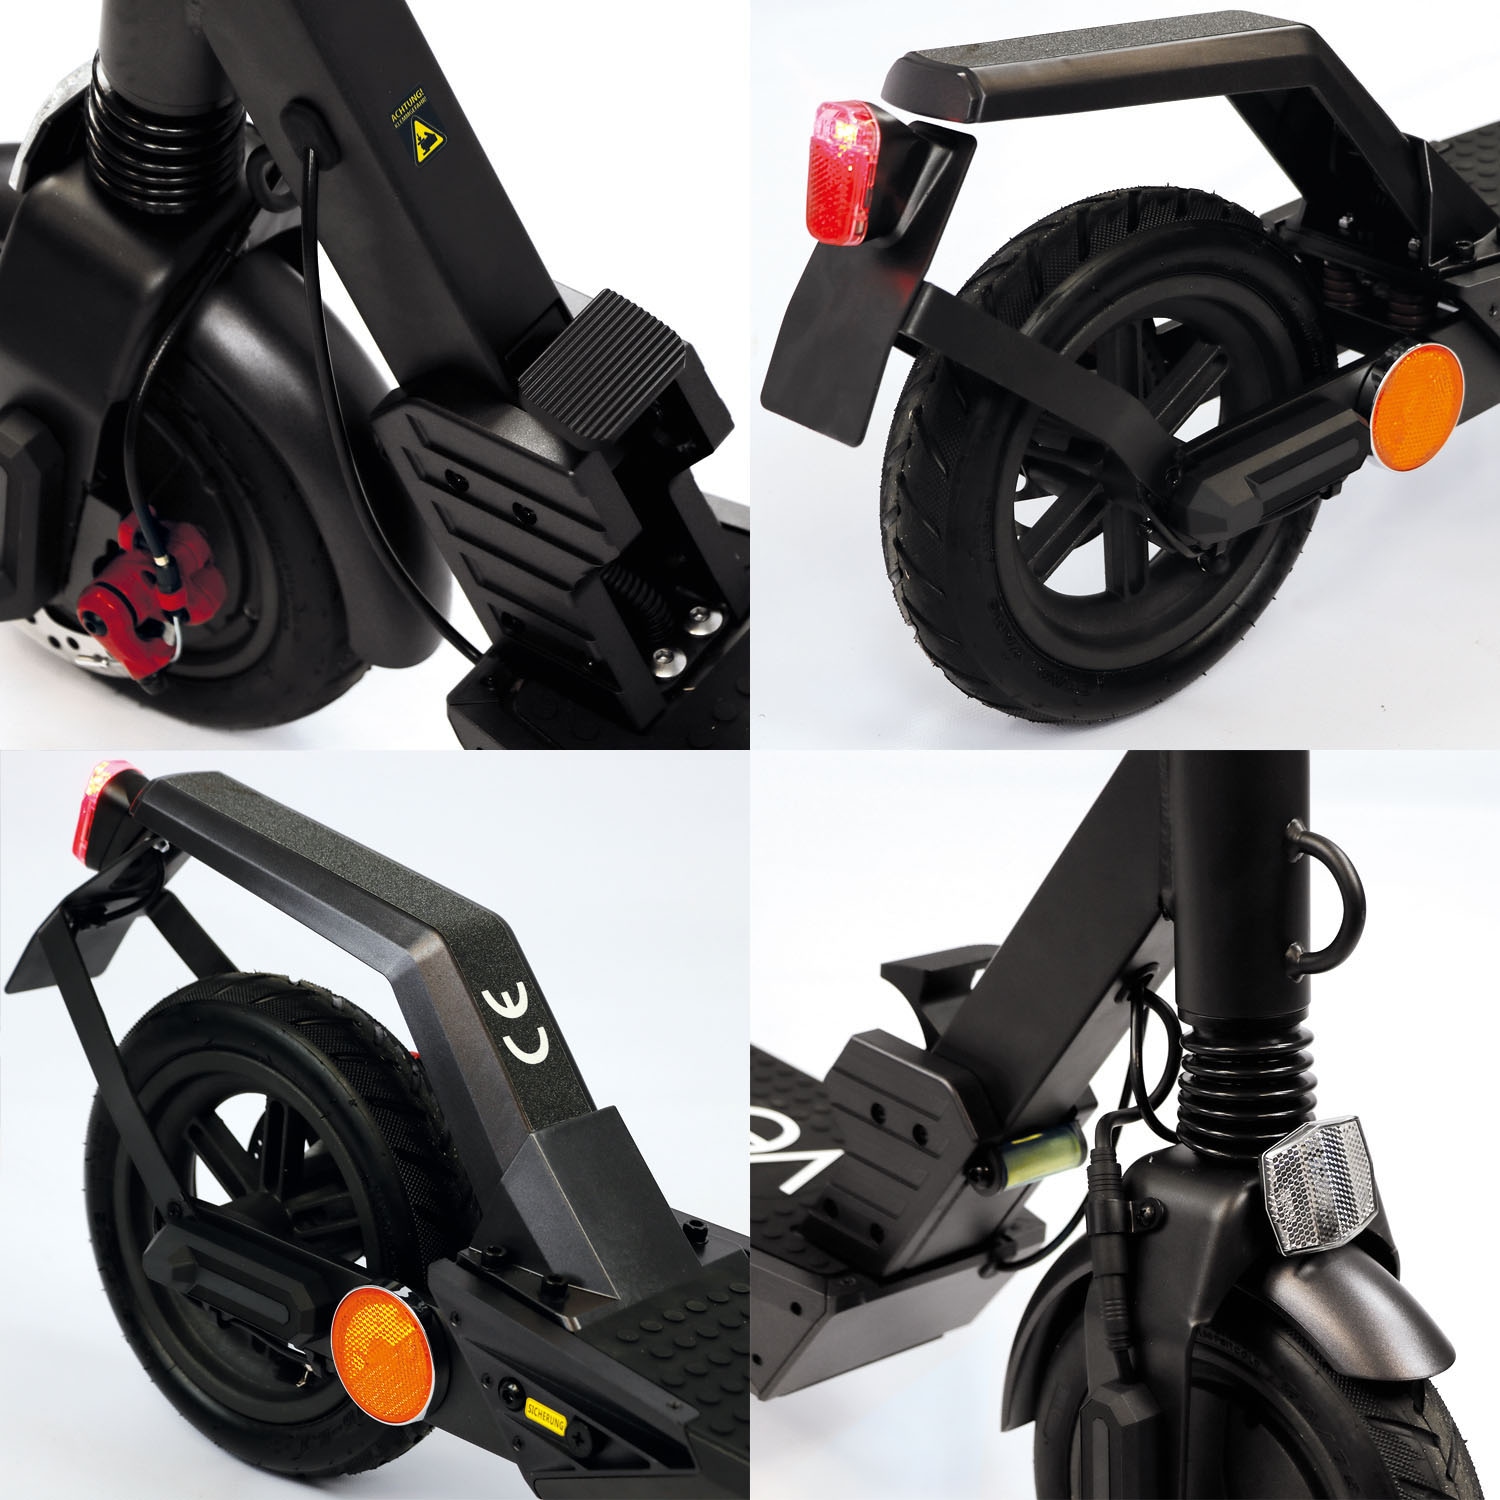 velix E-Scooter »E-Kick 20, V. 2021«, 20 km/h, 40 km, mit Straßenzulassung, bis zu 40 km Reichweite, klappbar